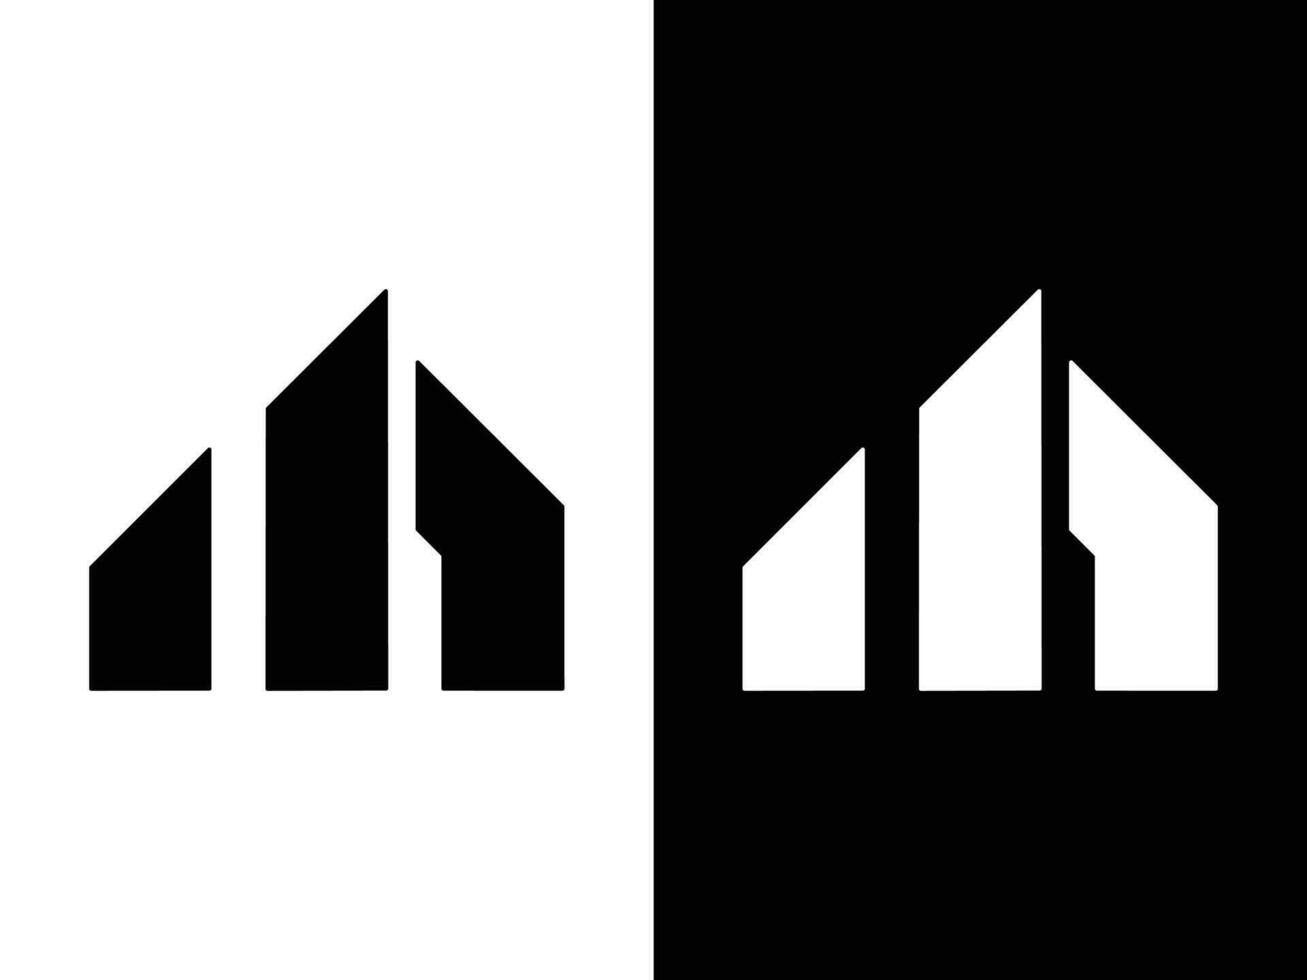 M letter logo design vector